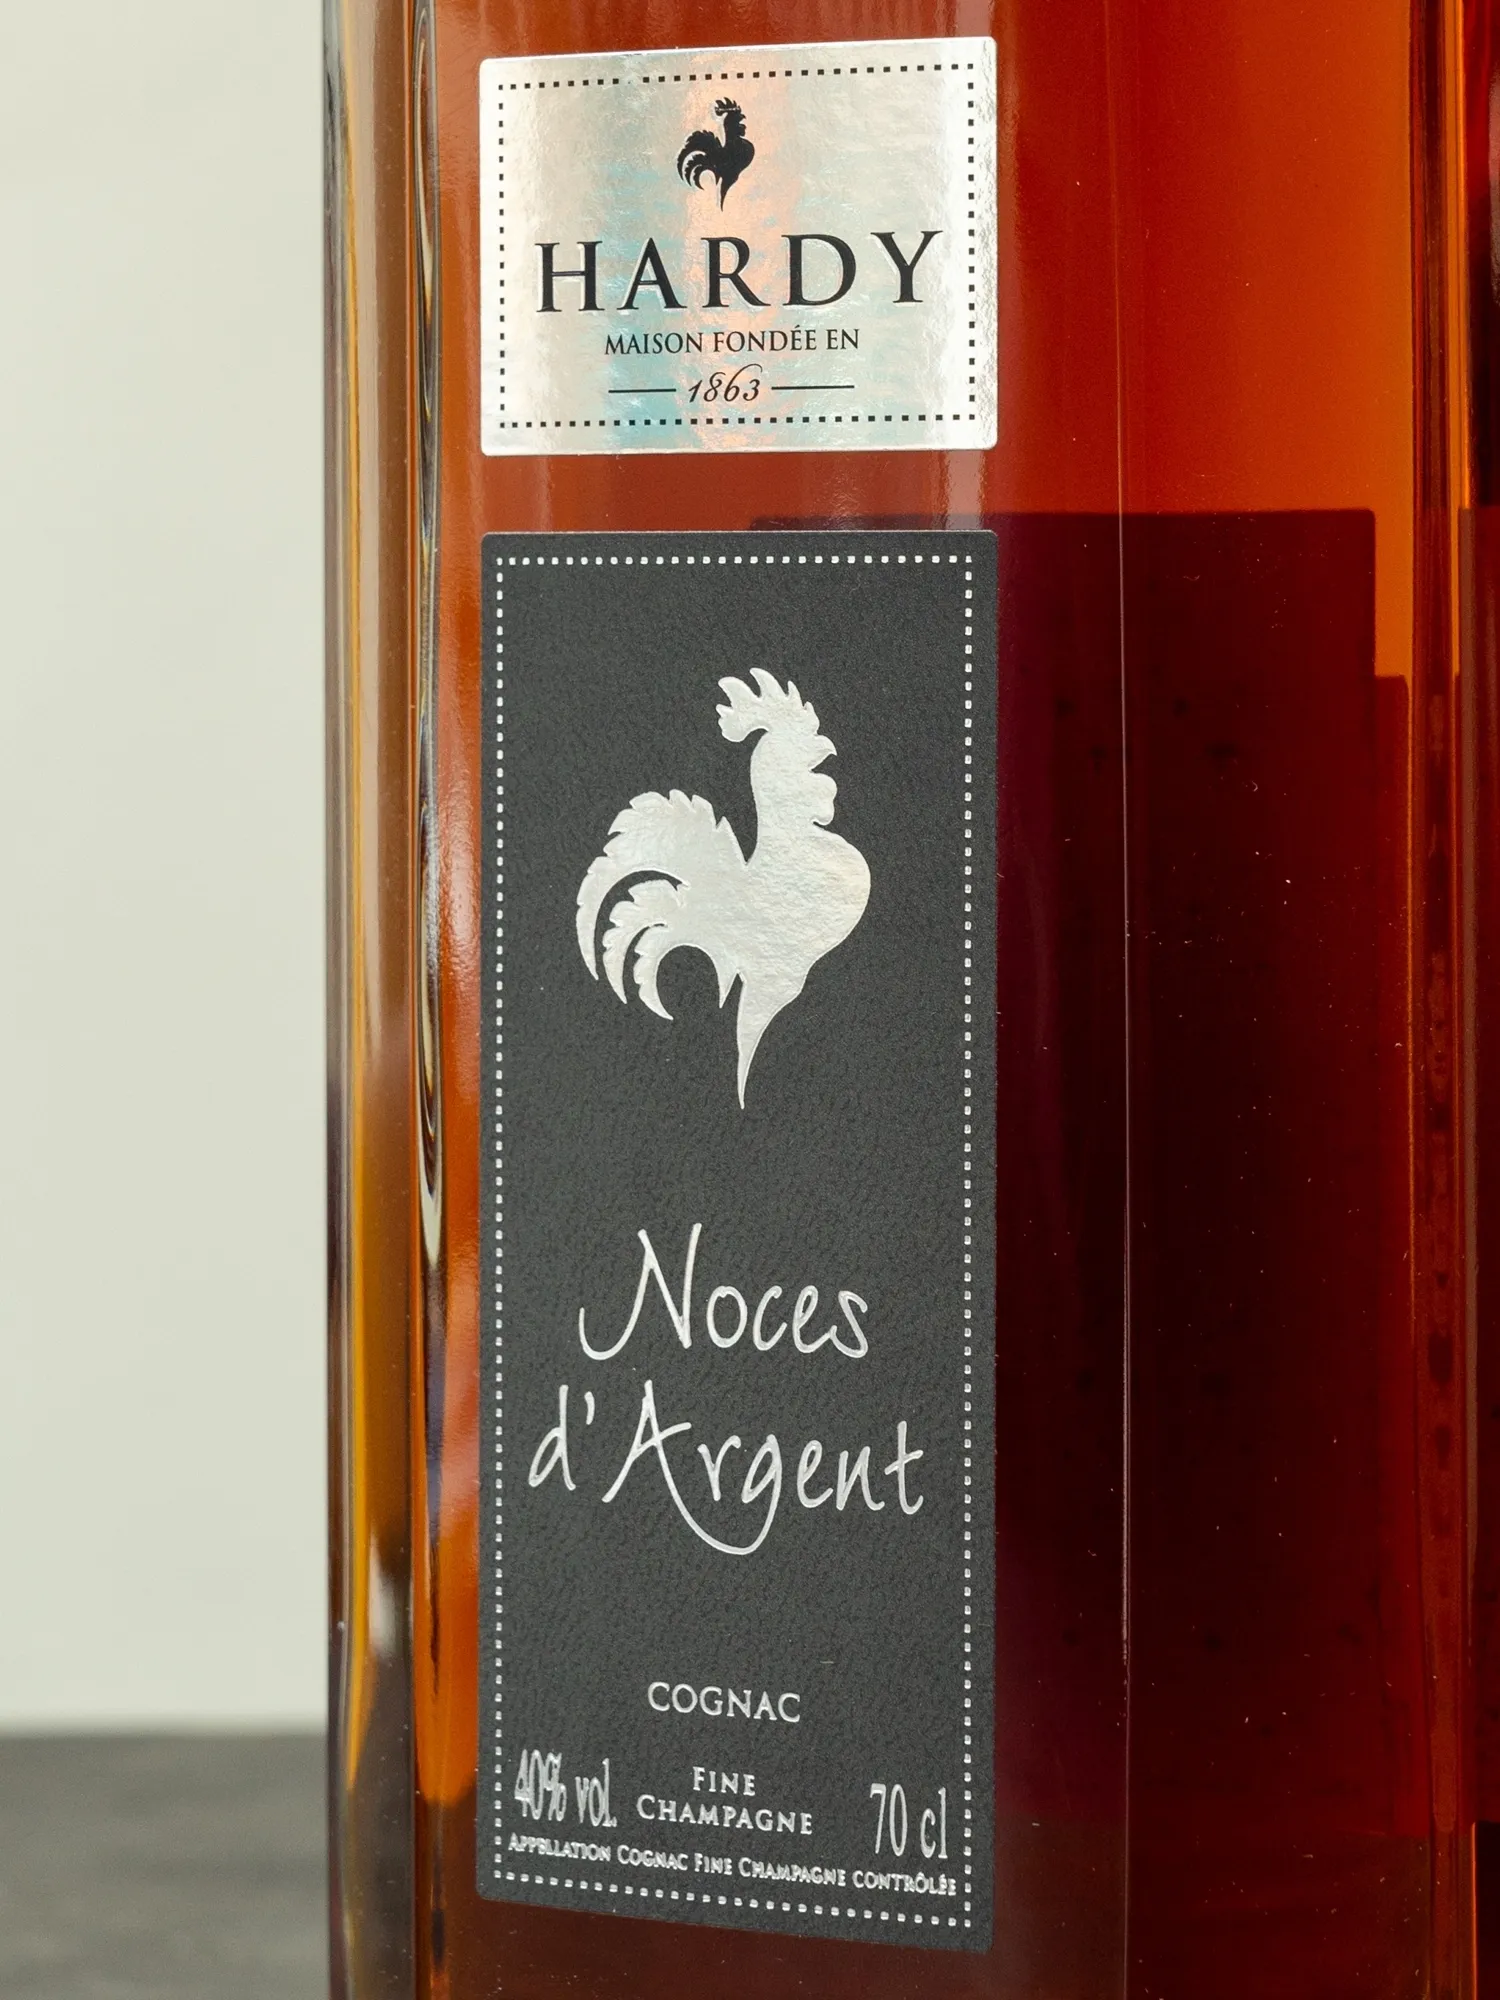 Коньяк Hardy Noces d Argent Fine Champagne / Арди Нос д'Аржан Фин Шампань